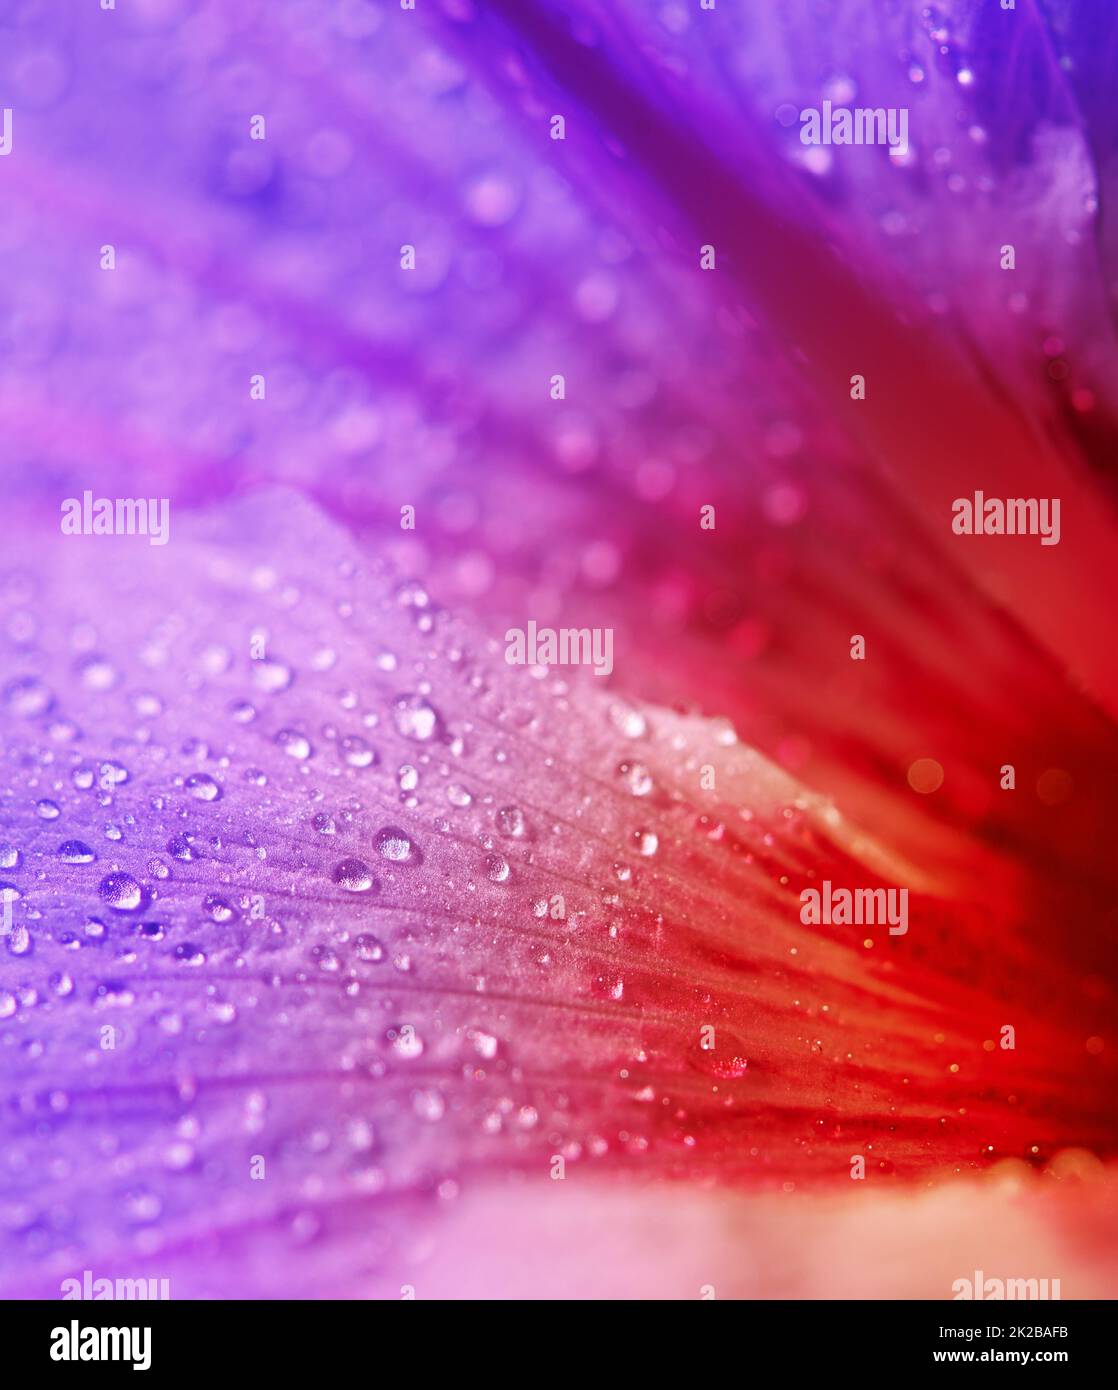 La sorprendente belleza de la naturaleza. Primer plano de una flor púrpura y roja cubierta de rocío. Foto de stock